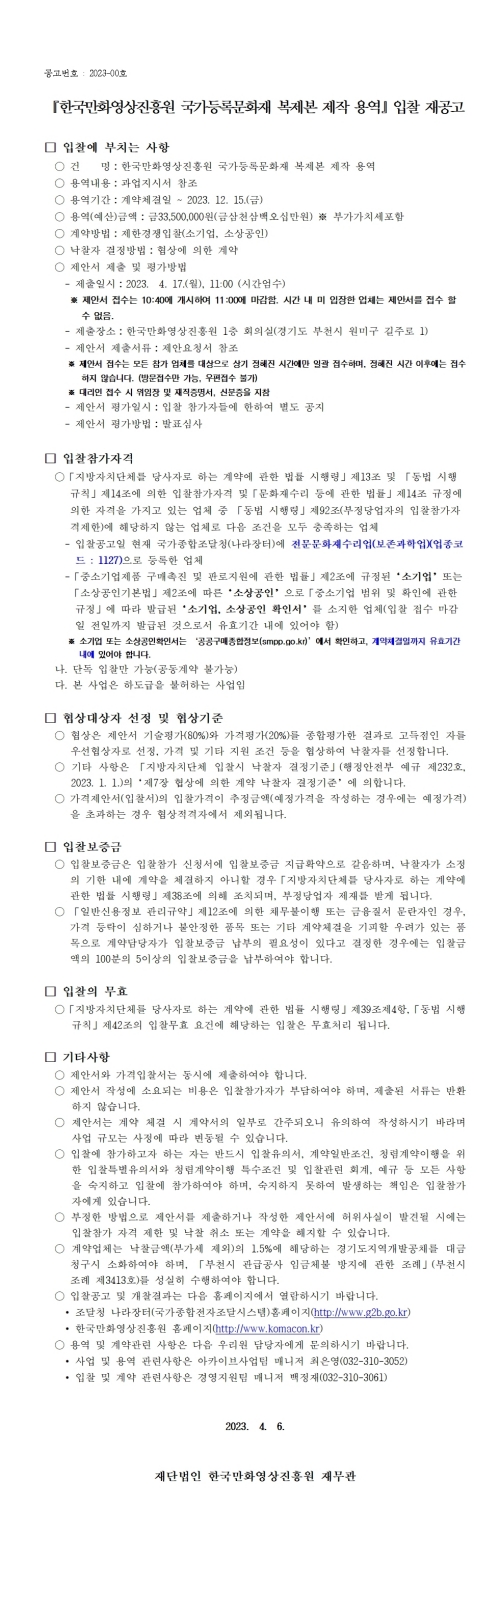 『한국만화영상진흥원 국가등록문화재 복제본 제작 용역』 입찰 재공고